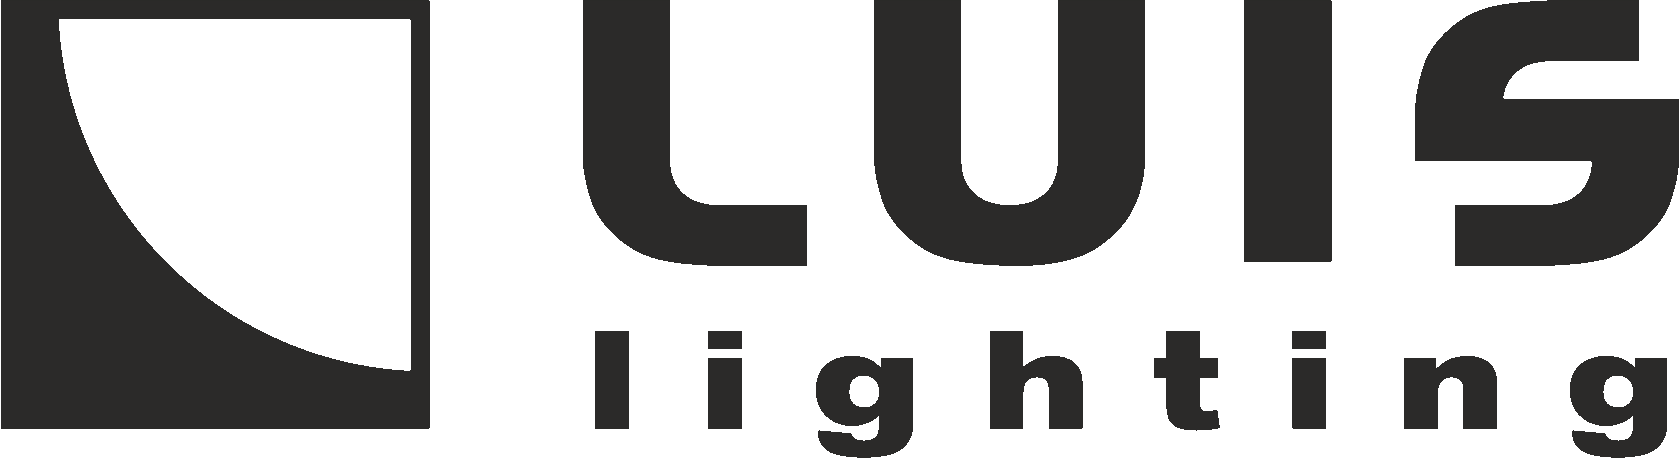 Luis Lighting Интернет-магазин товаров для освещения - люстры, светильники, настольные лампы, трековое освещение